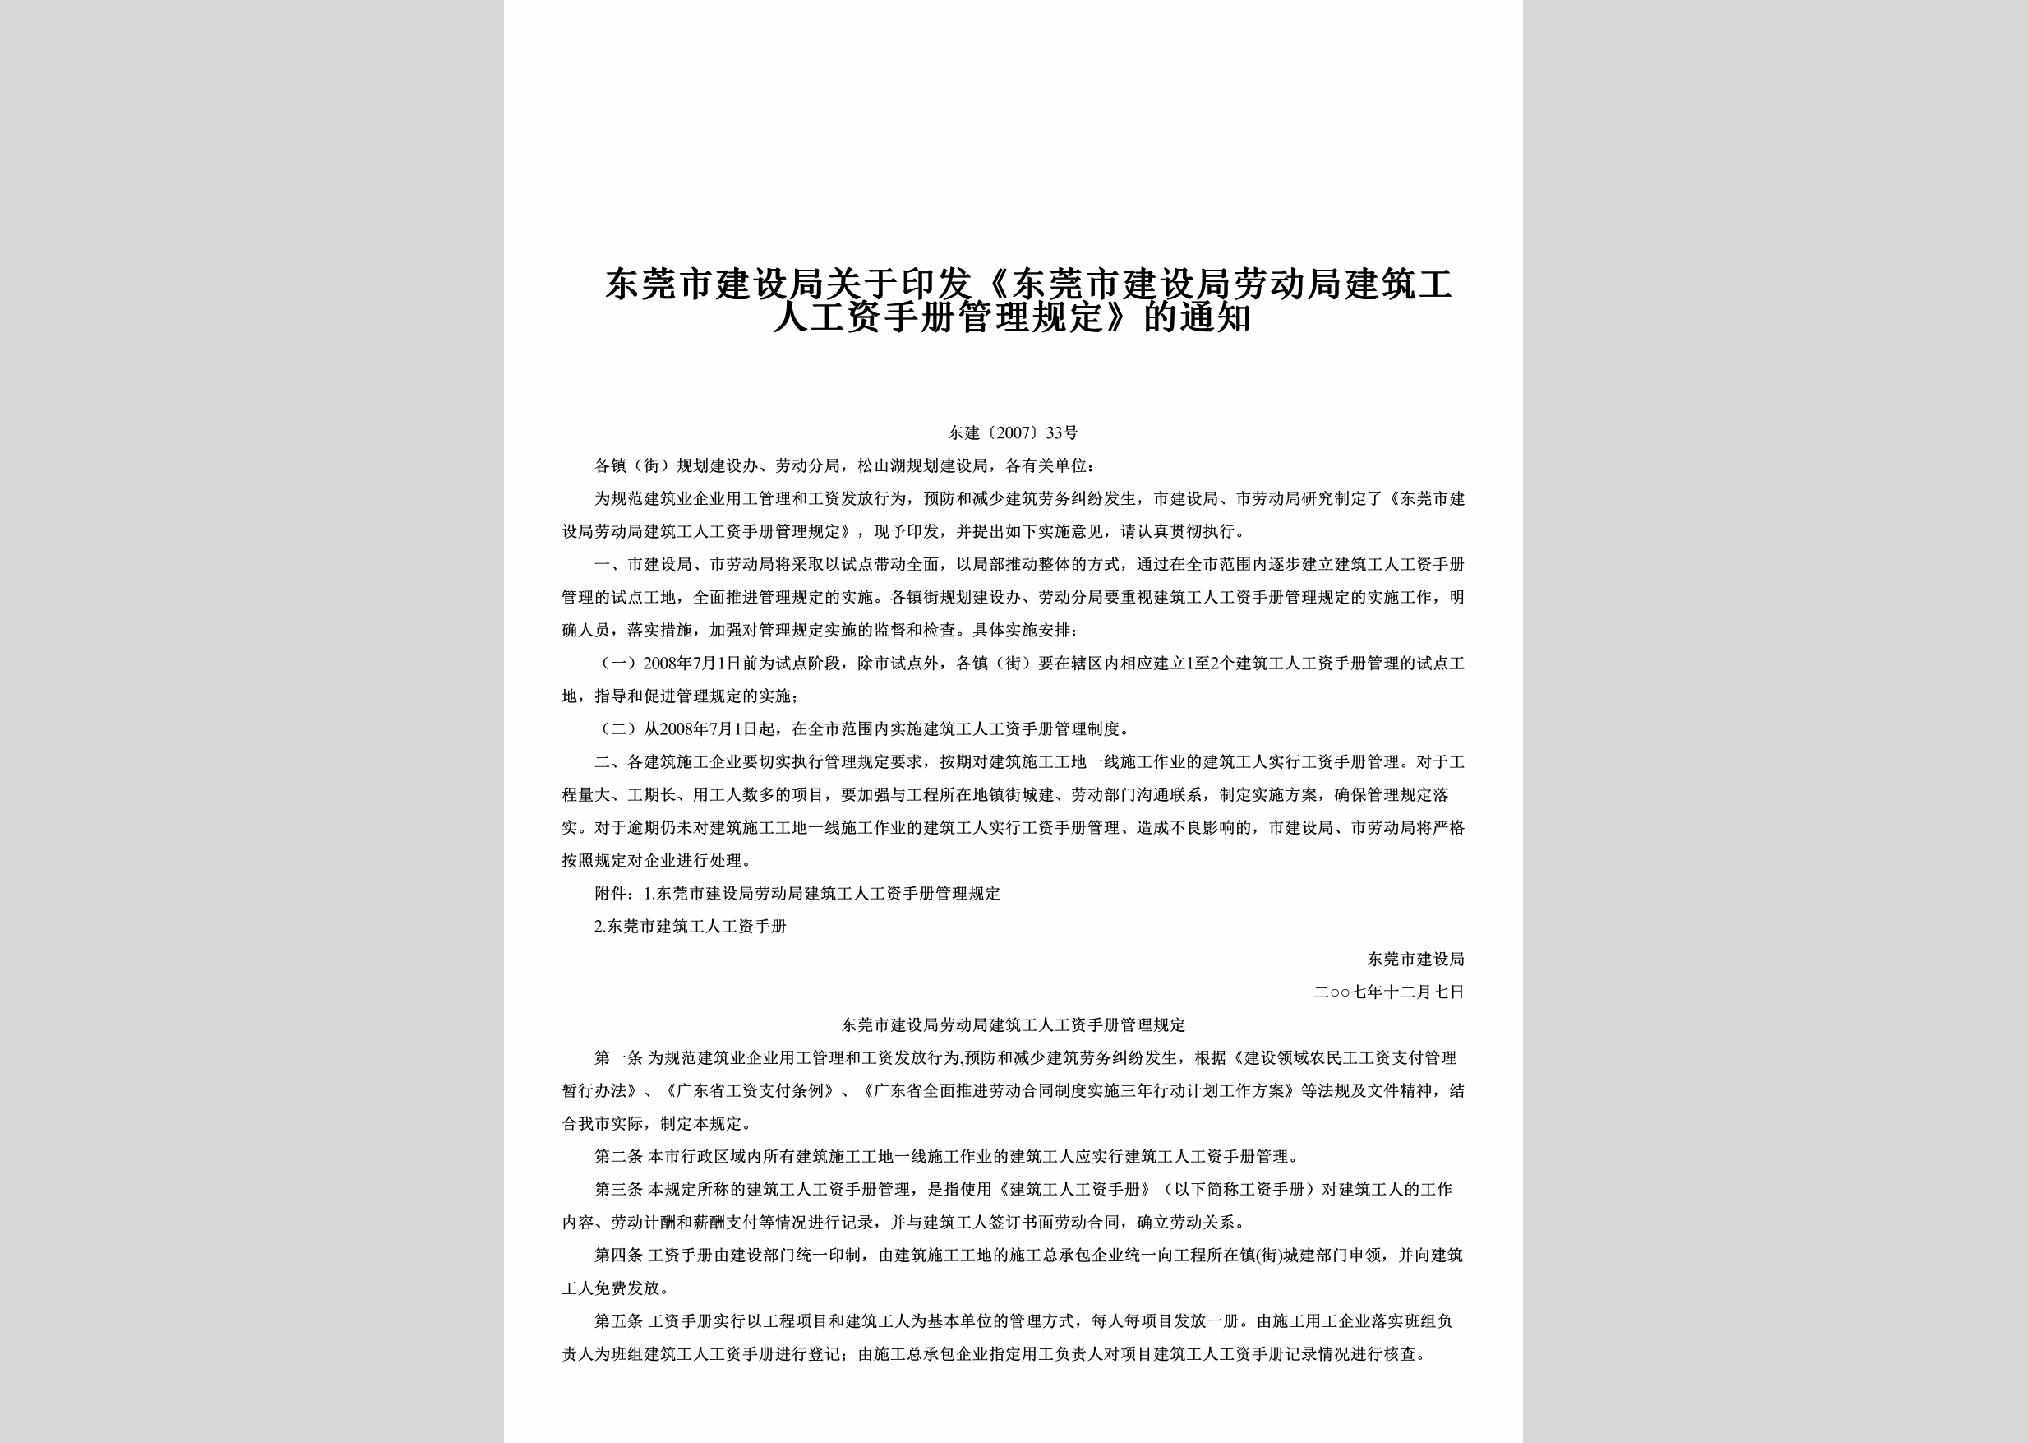 东建[2007]33号：关于印发《东莞市建设局劳动局建筑工人工资手册管理规定》的通知